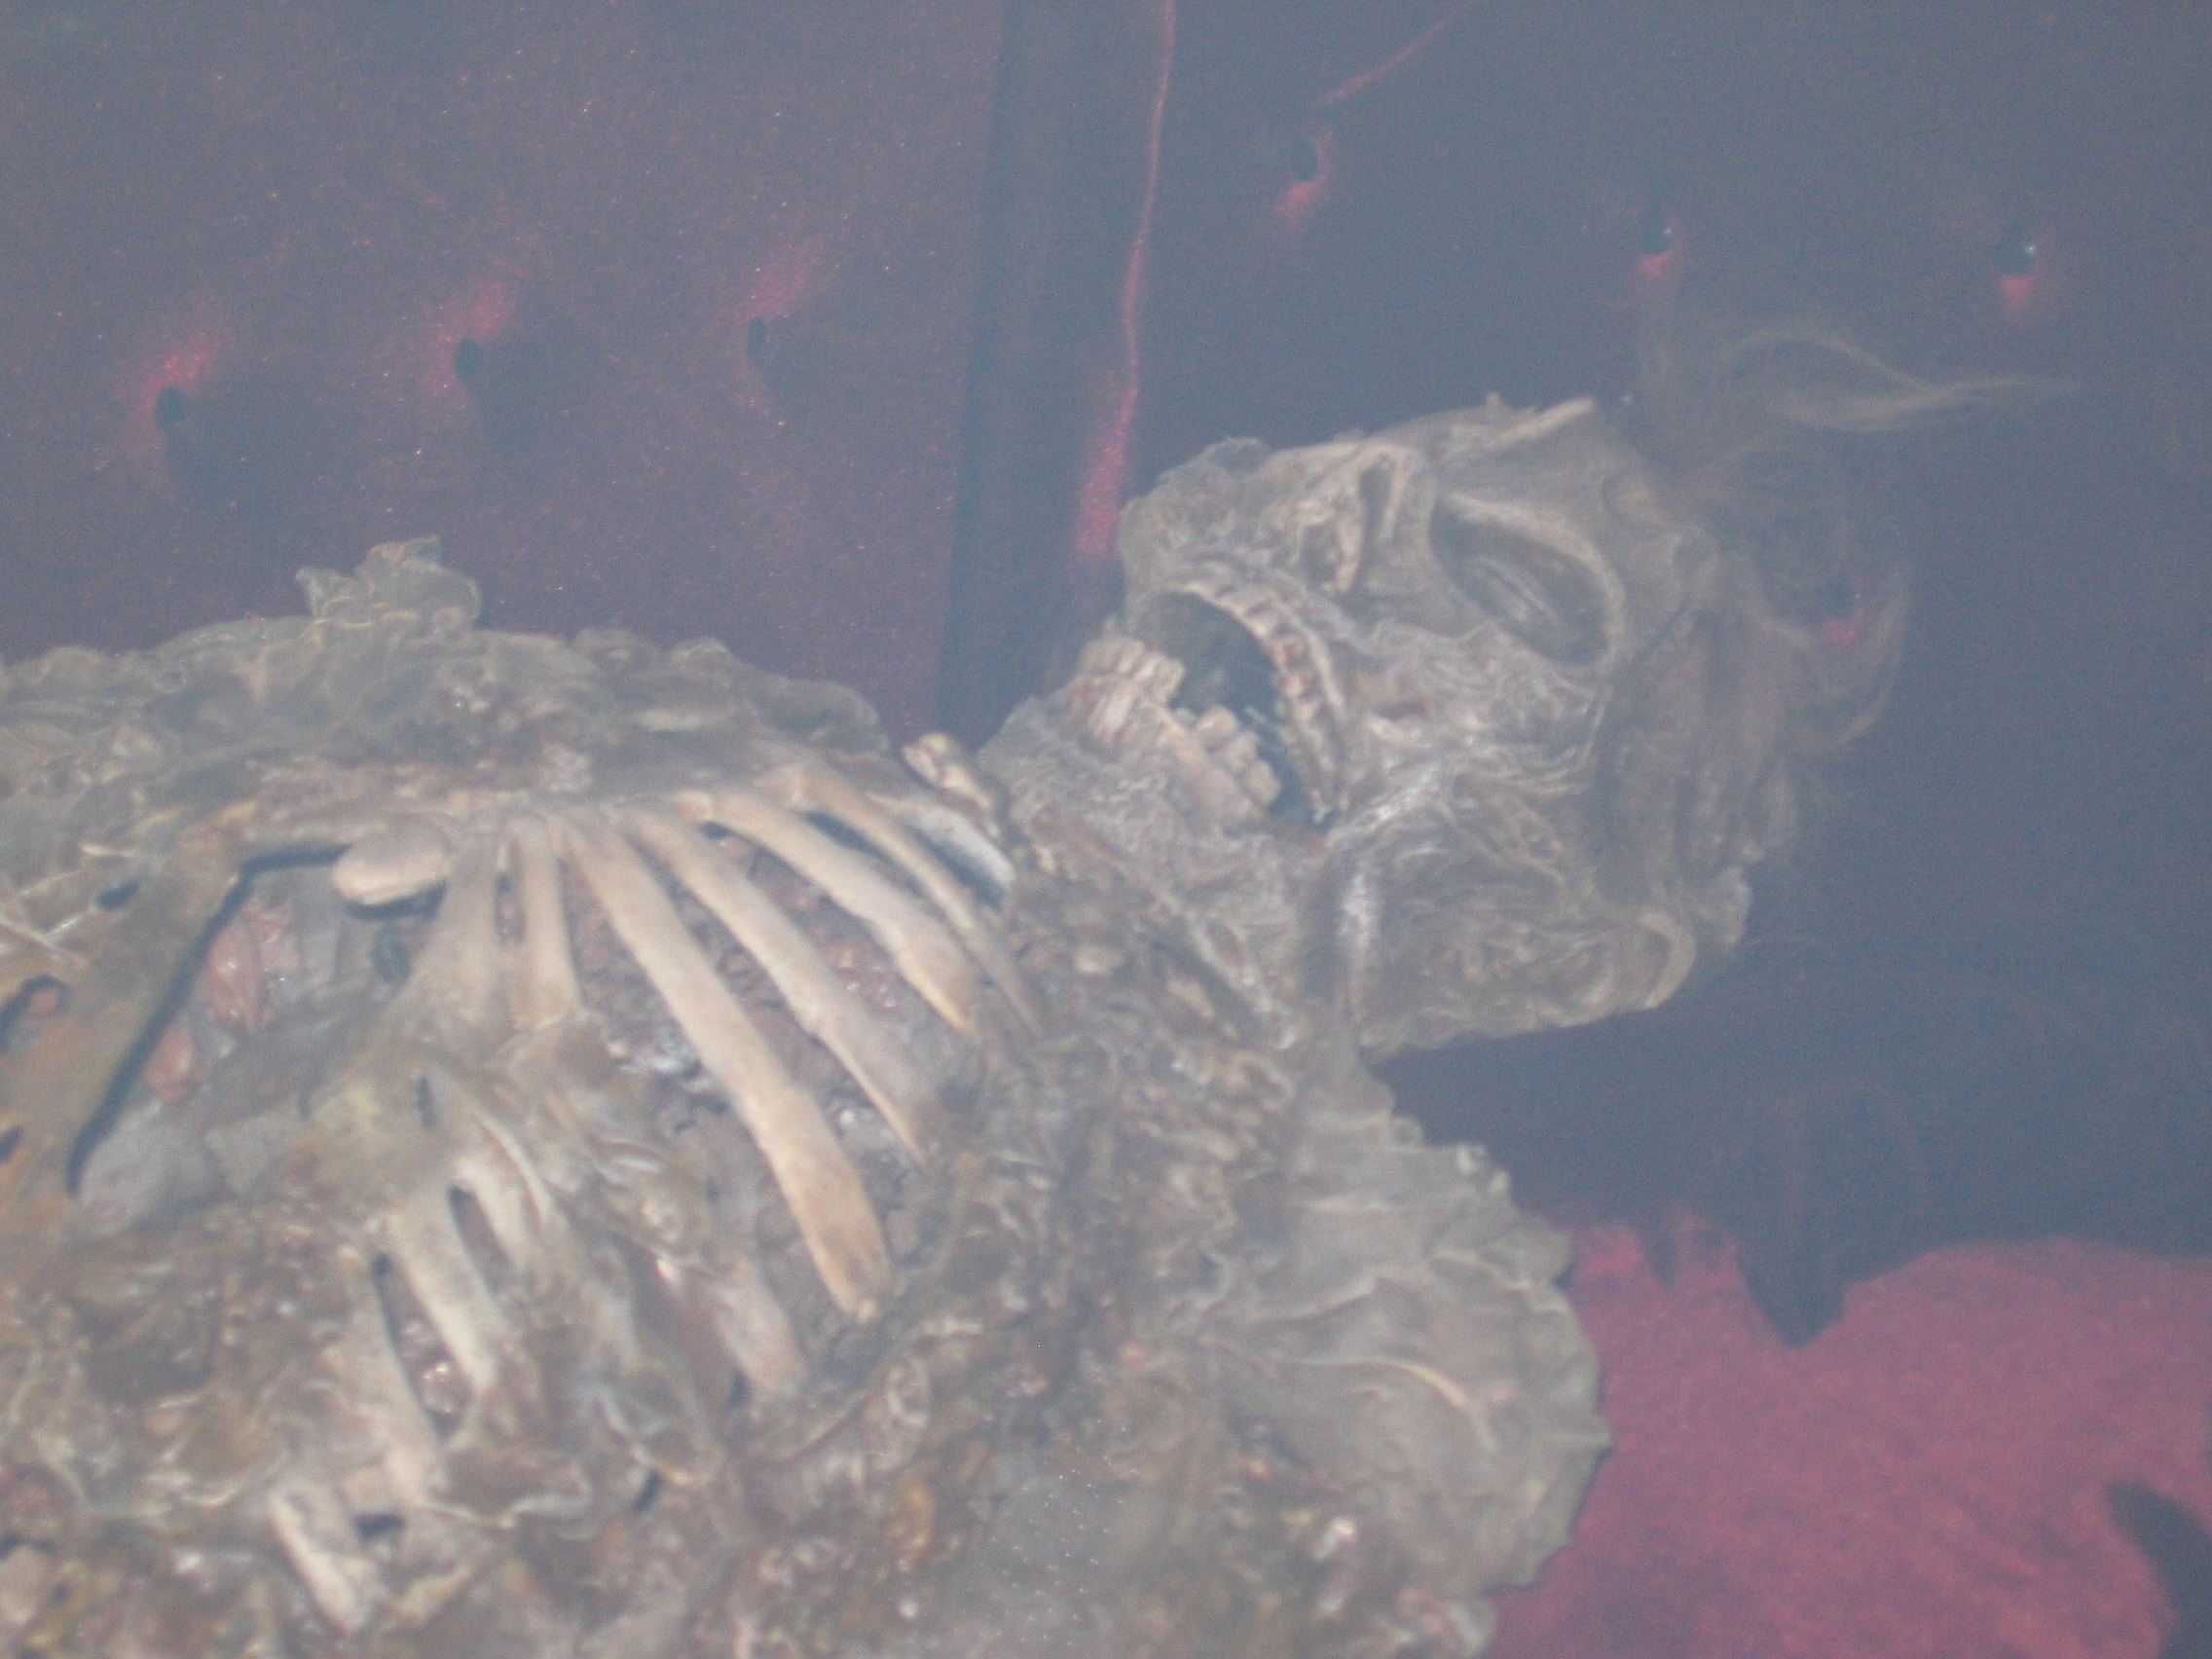 Photo taken by me – Skeleton in Satan's Hollow Nightclub, Manchester